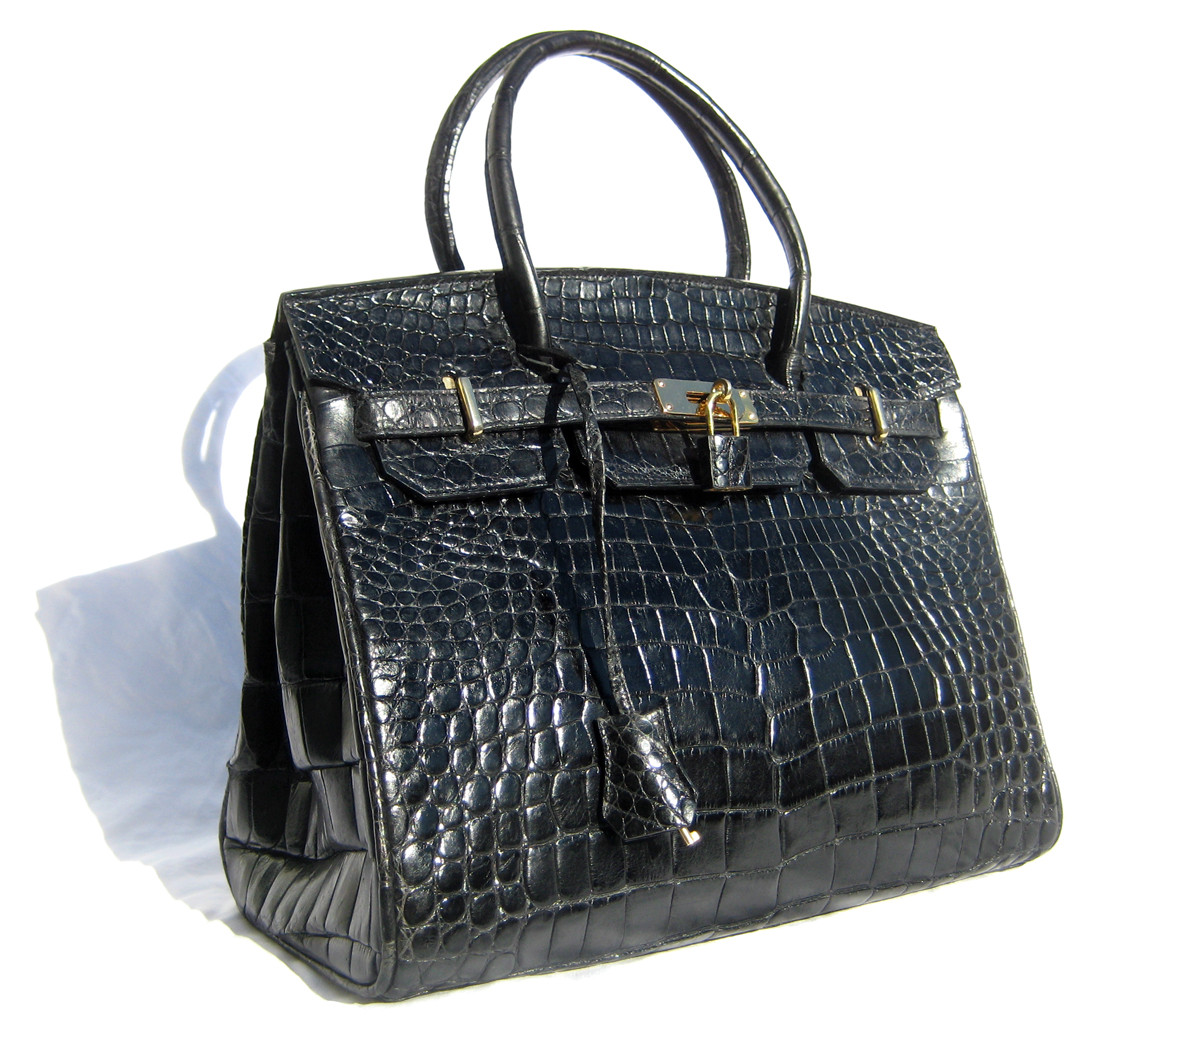 XL 13 x 10 BLACK Early 2000's Alligator Belly Skin KELLY Bag SATCHEL Bag -  Hermes Style! - Vintage Skins